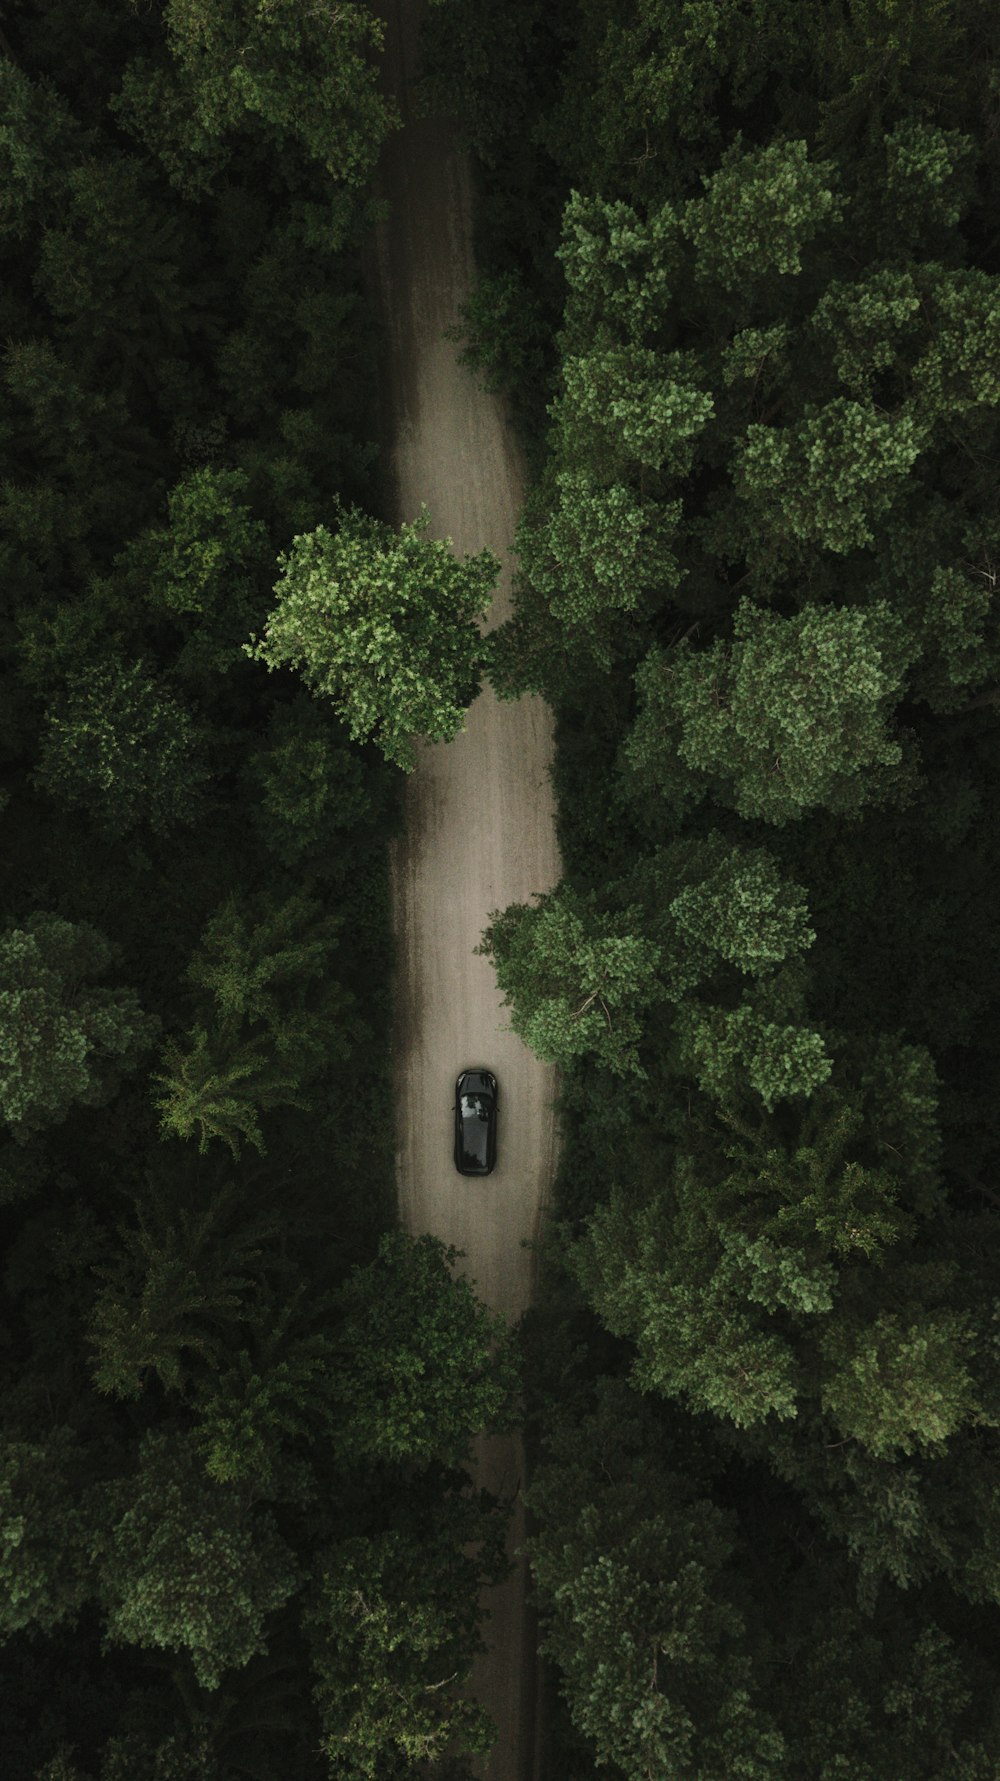 voiture noire sur la route près d’arbres verts pendant la journée